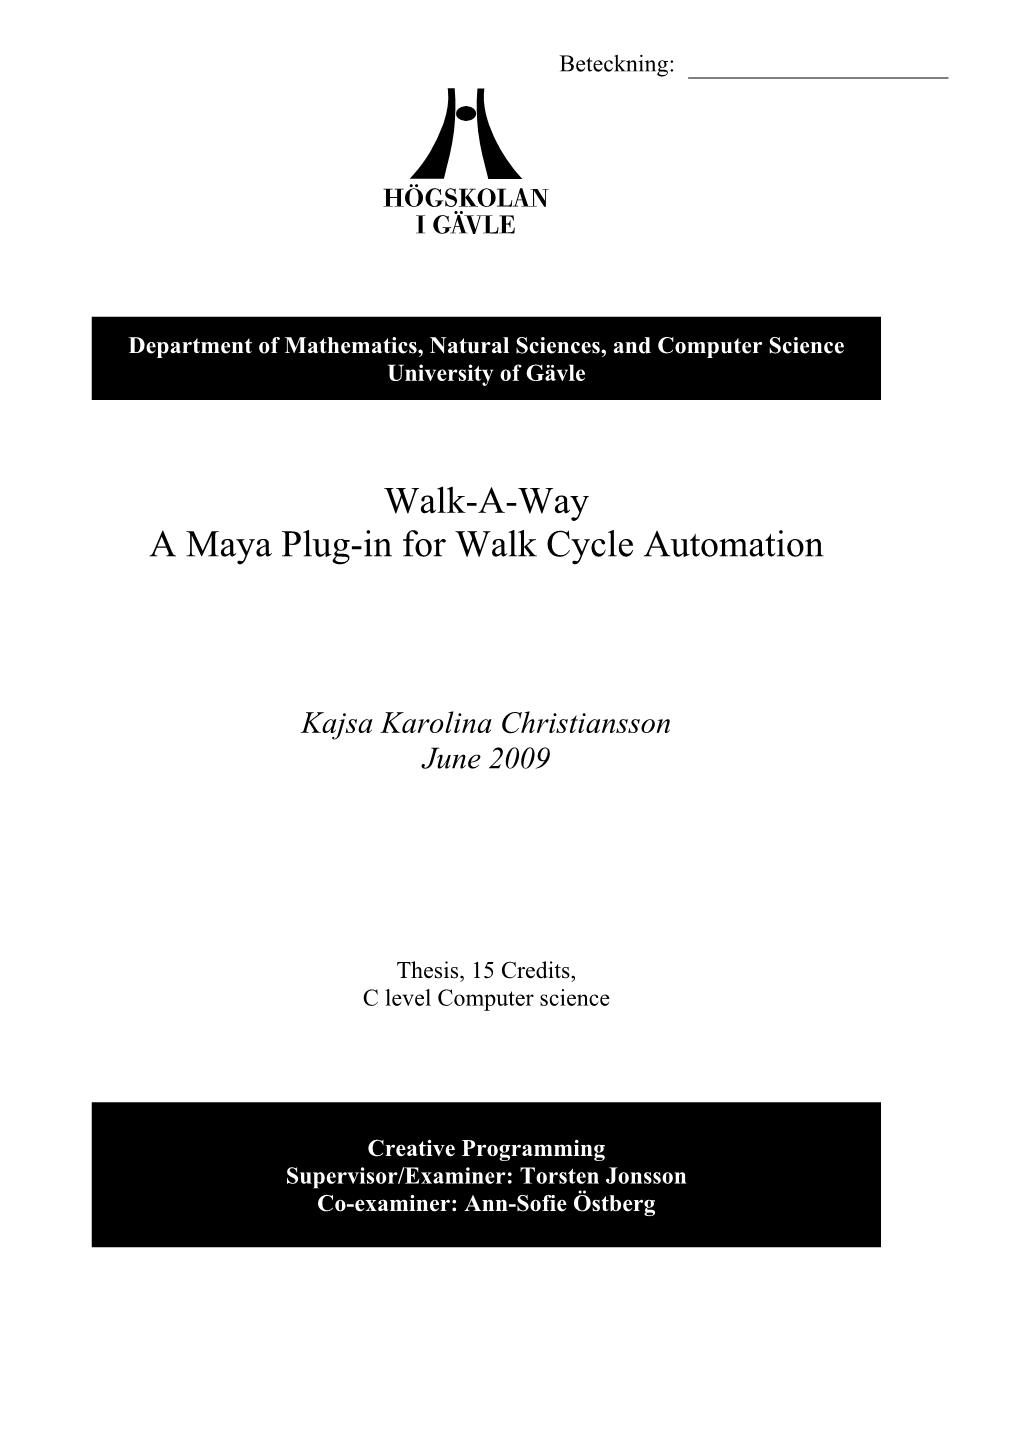 Walk-A-Way a Maya Plug-In for Walk Cycle Automation